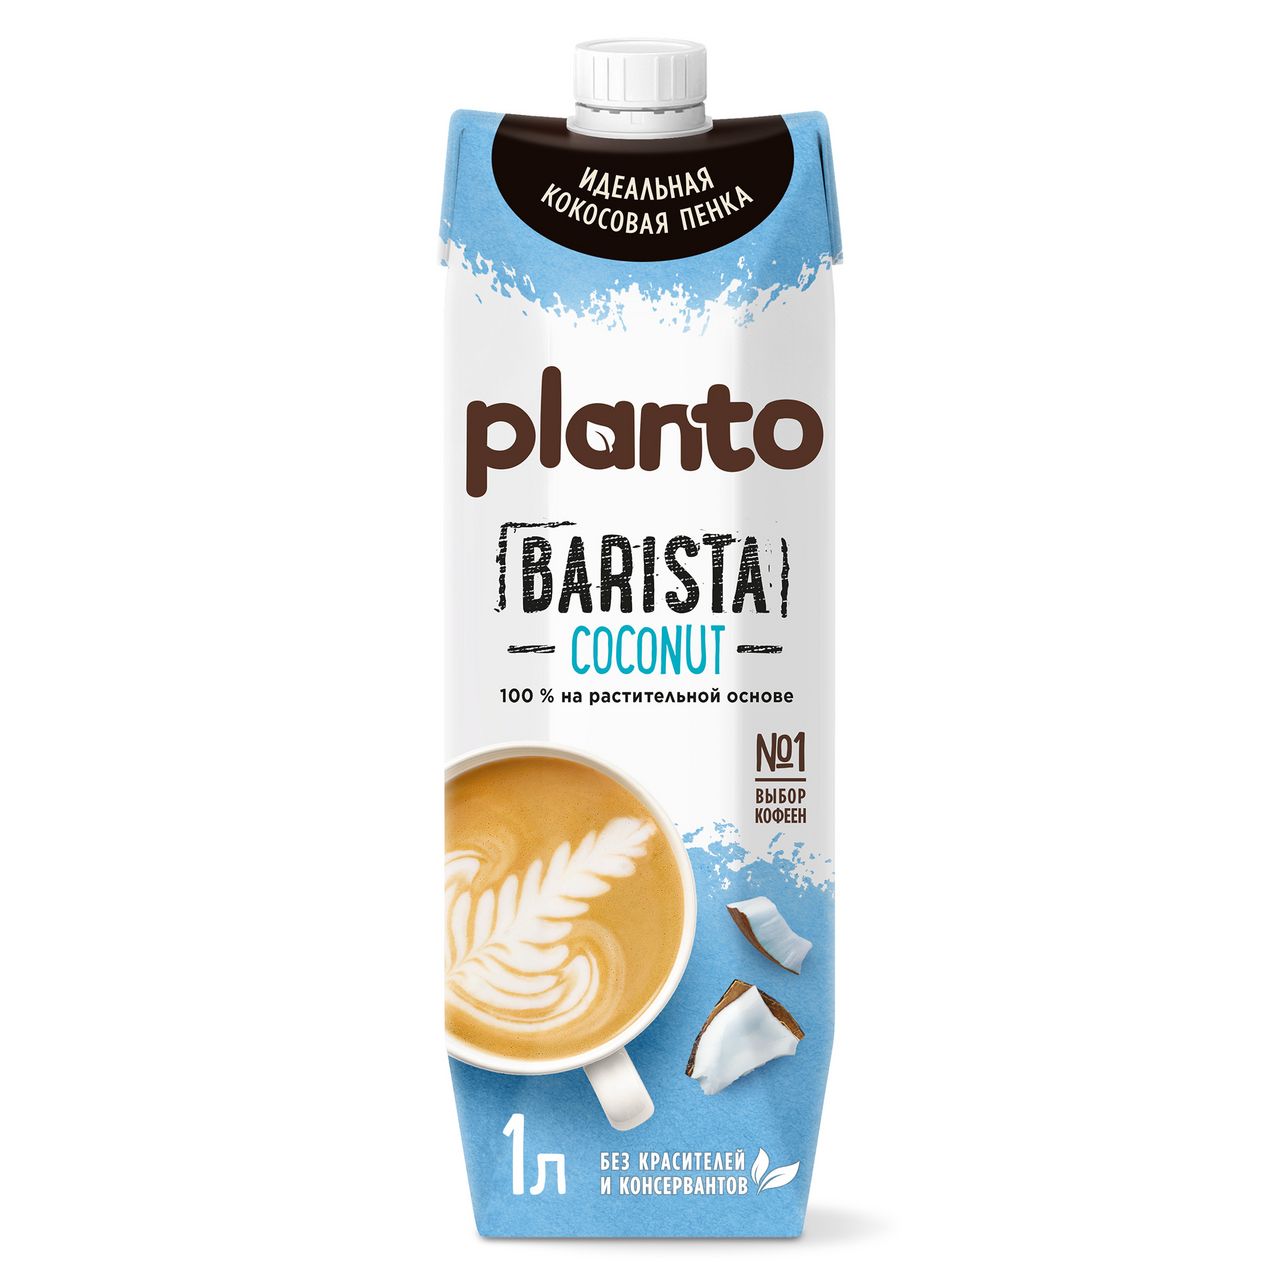 PLANTO - Barista Coconut  Растительный напиток TetraPak 1л